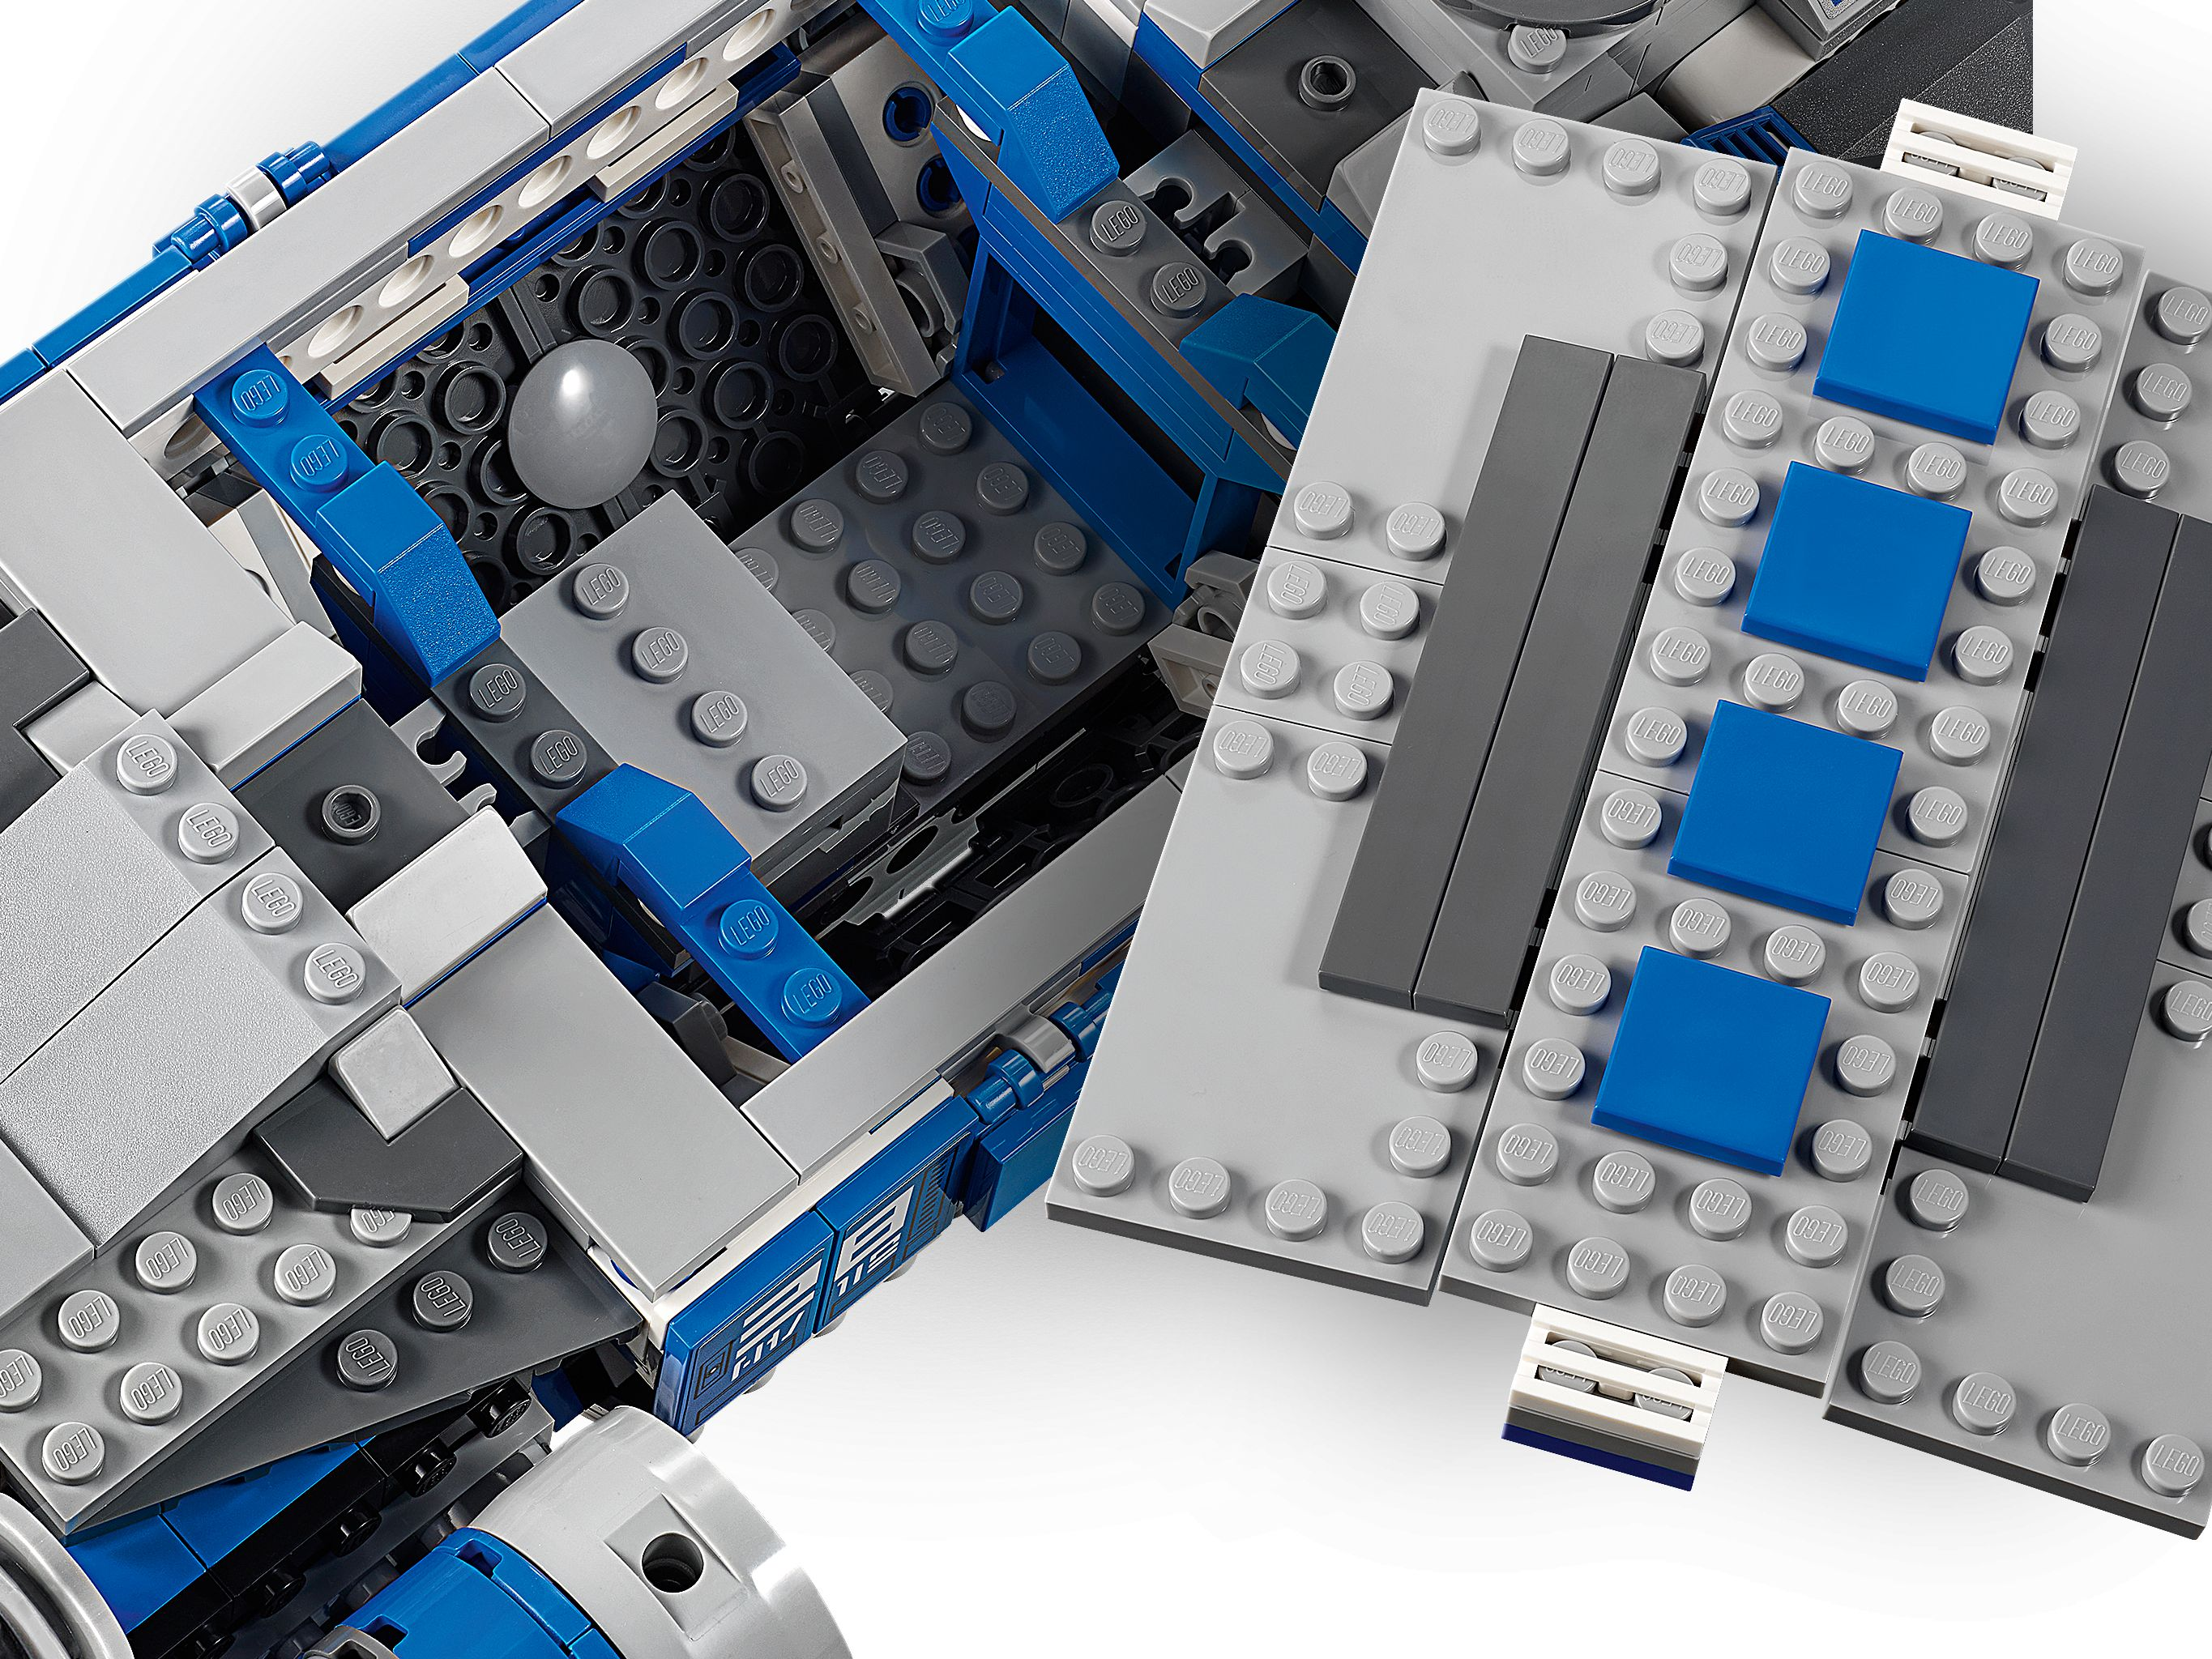 75293 Bausatz Transportschiff I-TS LEGO Rebellen der